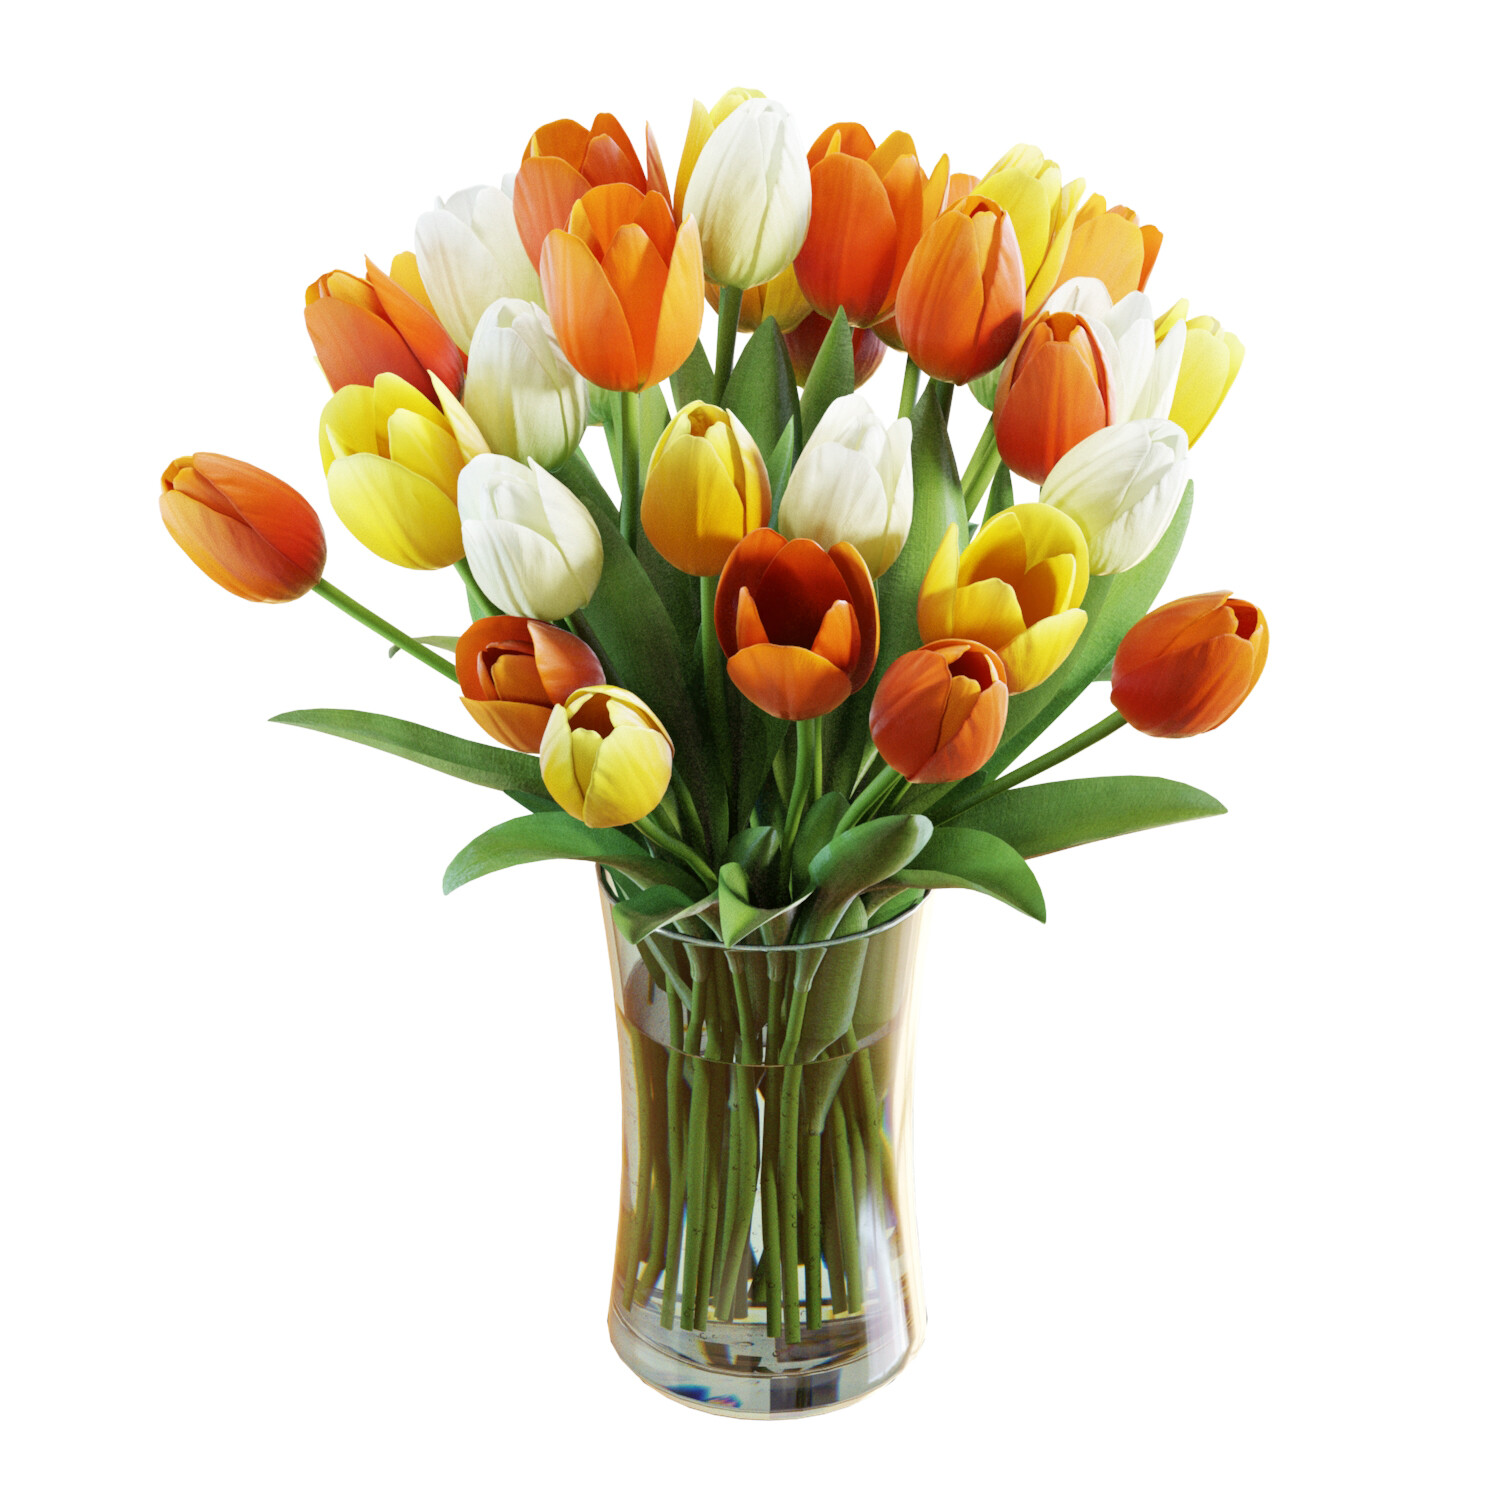 3detto - Flower Set 29 / Multicolor Tulips Bouquet